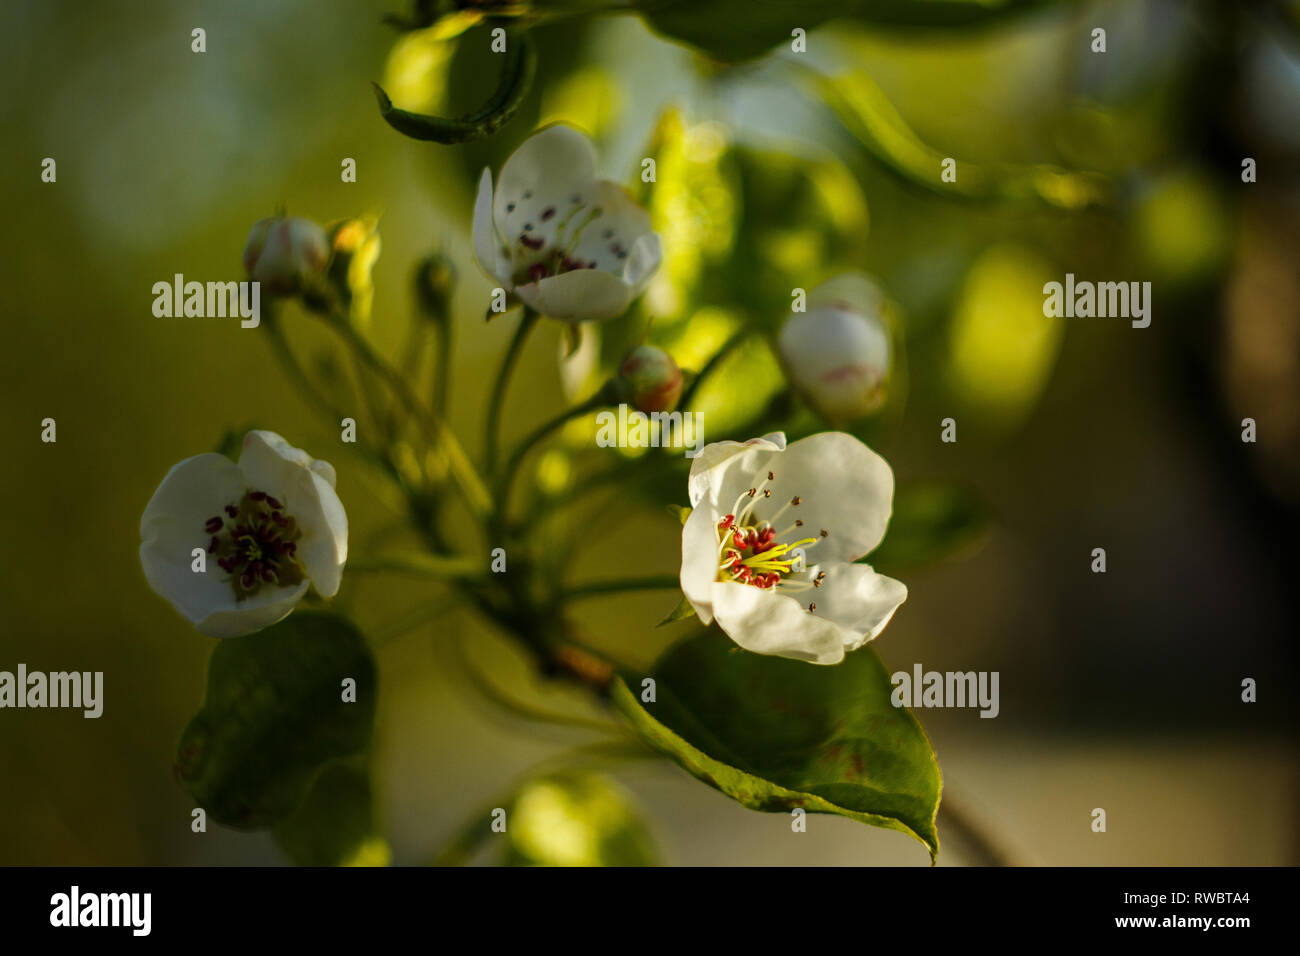 Eine Birne Blumen blühen auf gelb-grüne Blätter Hintergrund. Ein Blumen an der sonnigen Tag Stockfoto